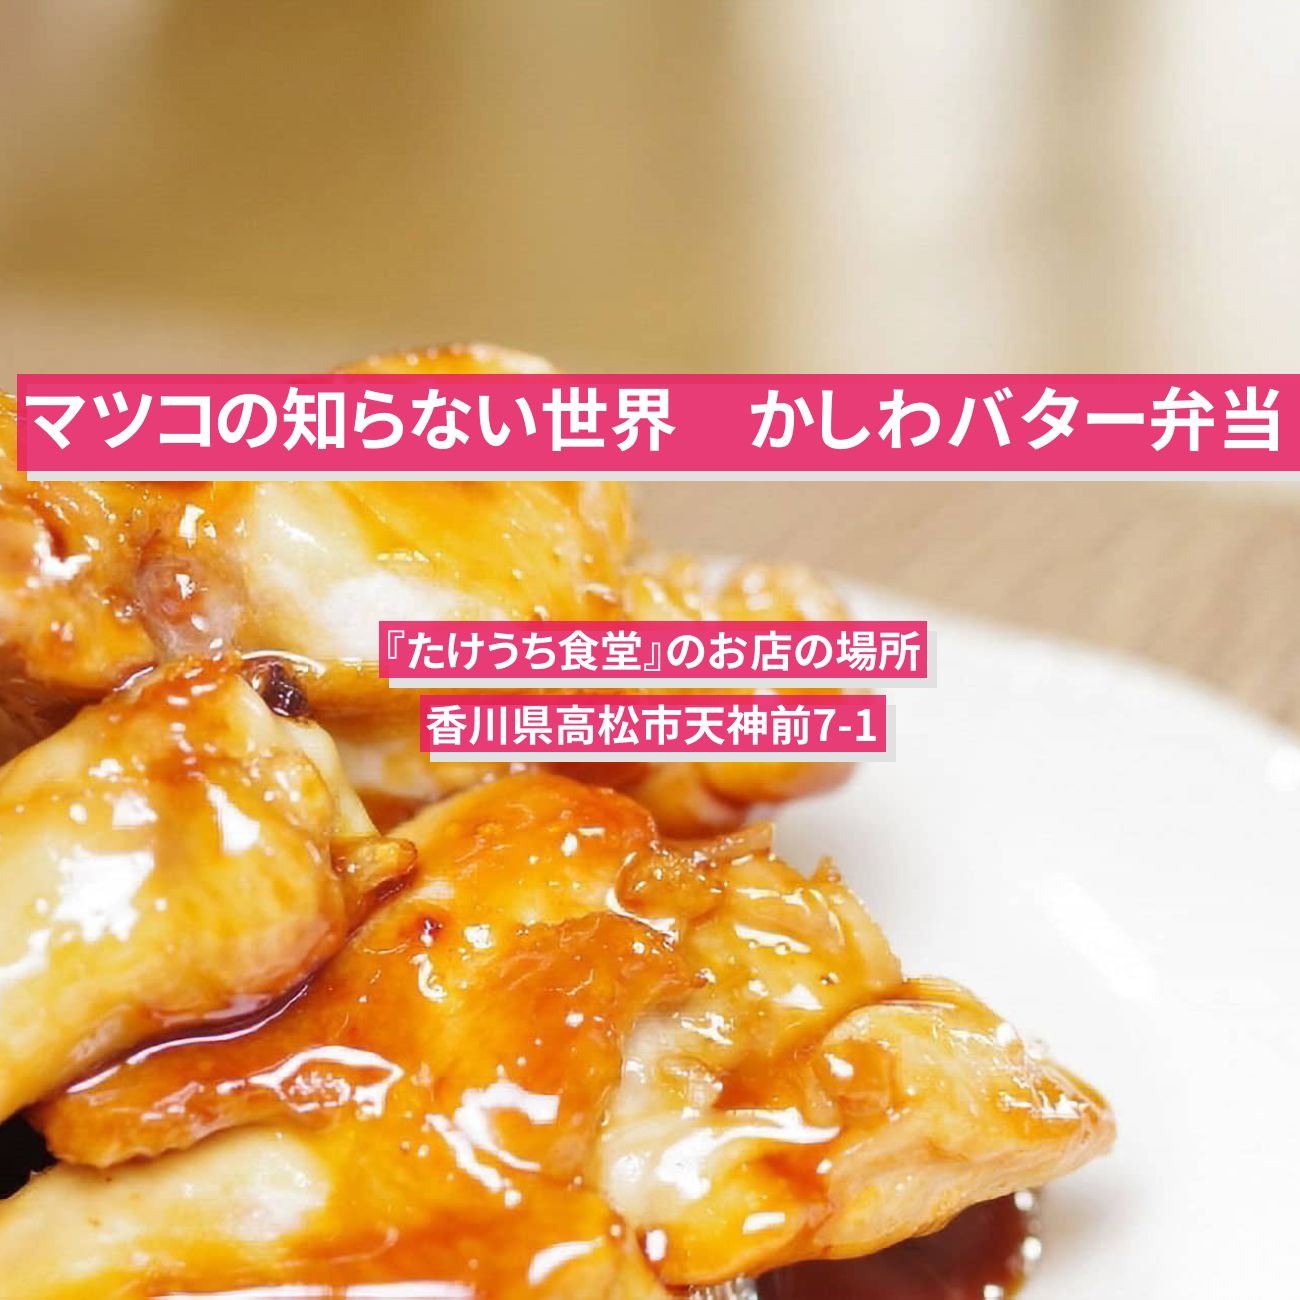 【マツコの知らない世界】かしわバター弁当『たけうち食堂』香川県高松のご当地弁当のお店の場所